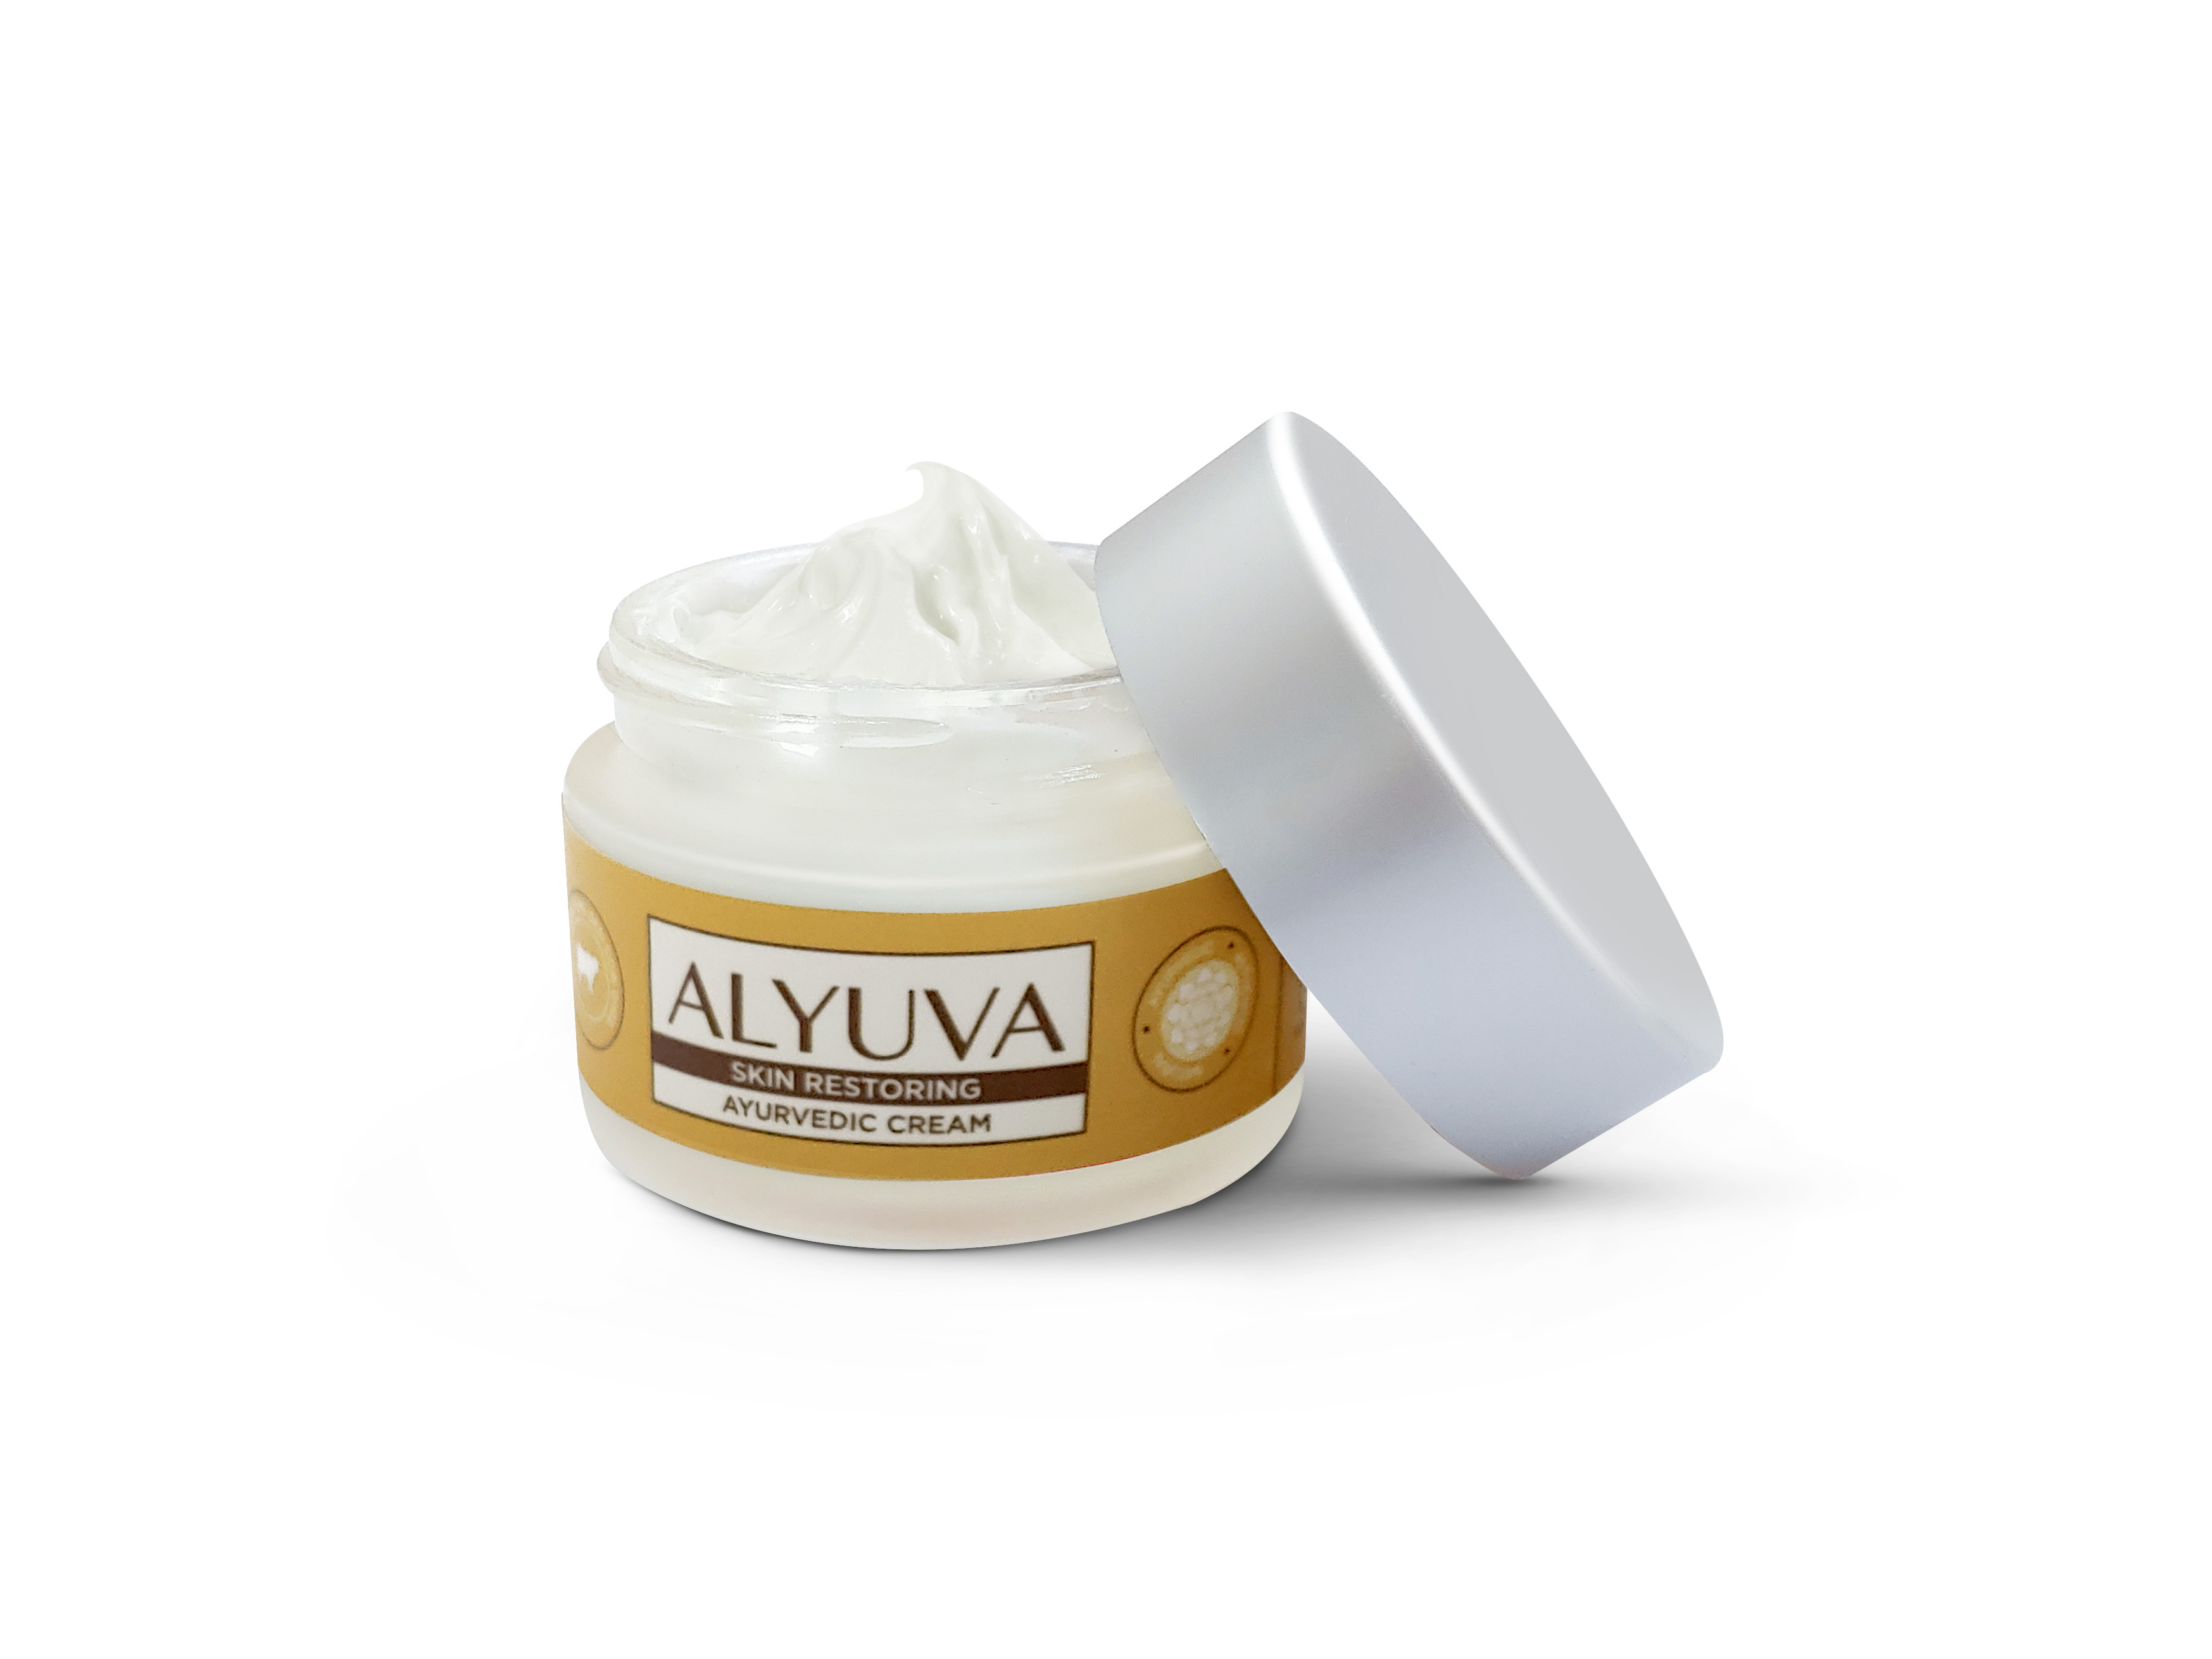 Alyuva’s Skin Restoring Beauty Cream